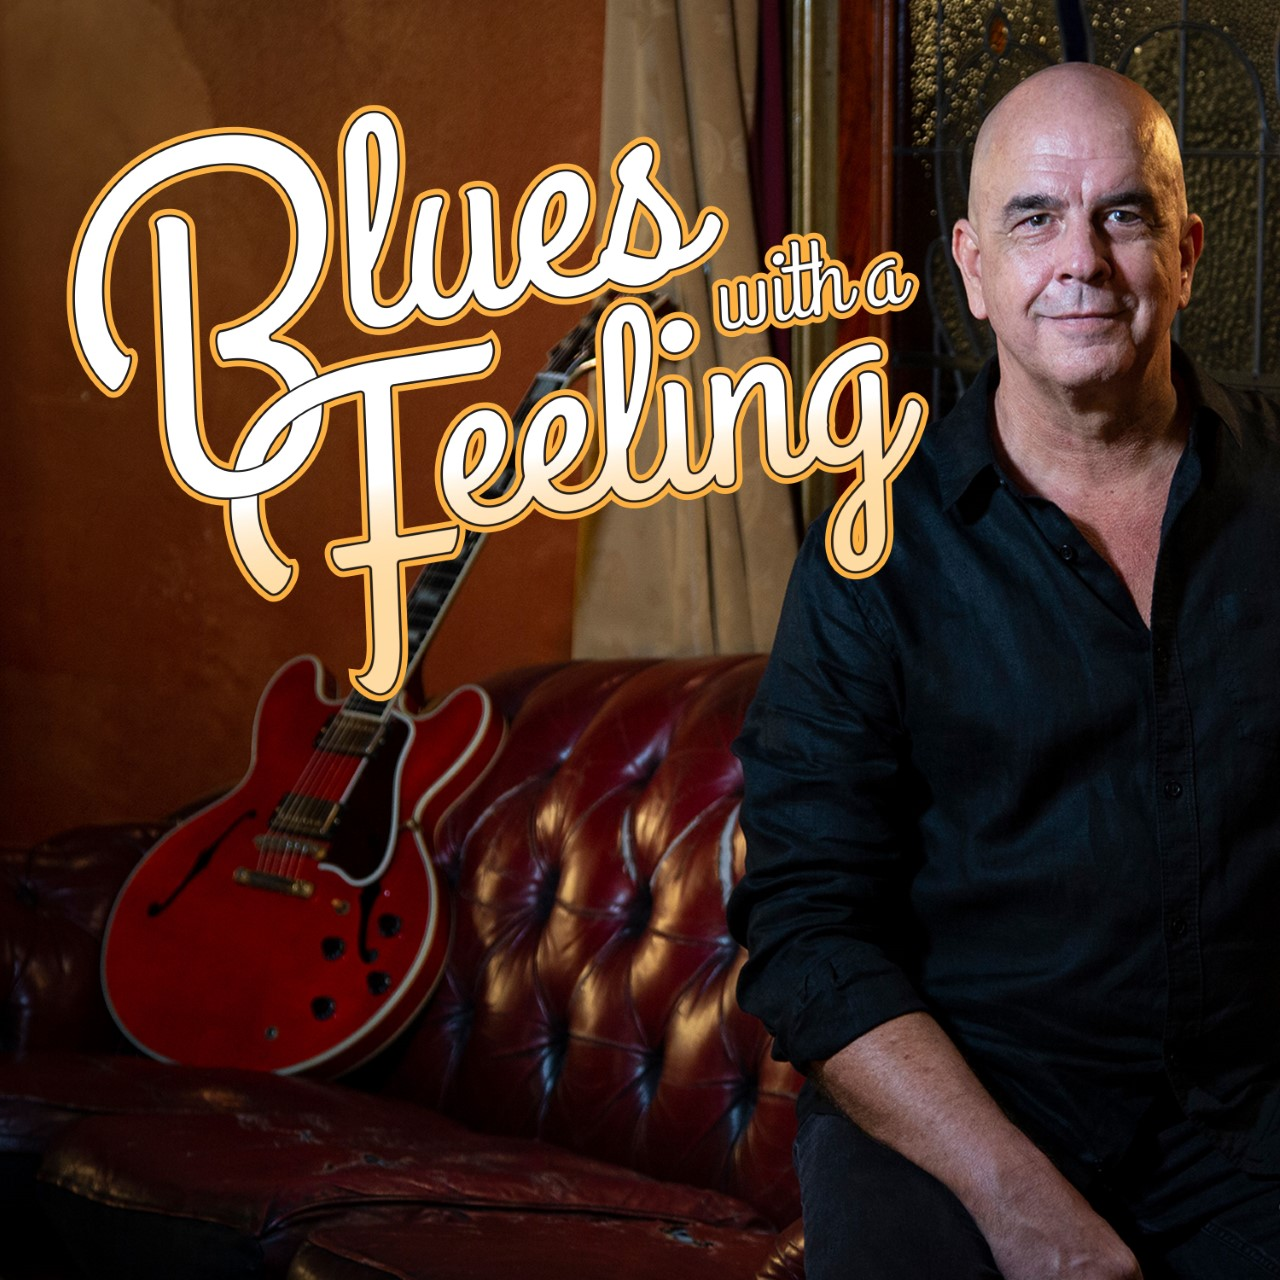 SE 4 Ep 6 Jimmy Rogers Classic Album Feature - Blues Blues Blues